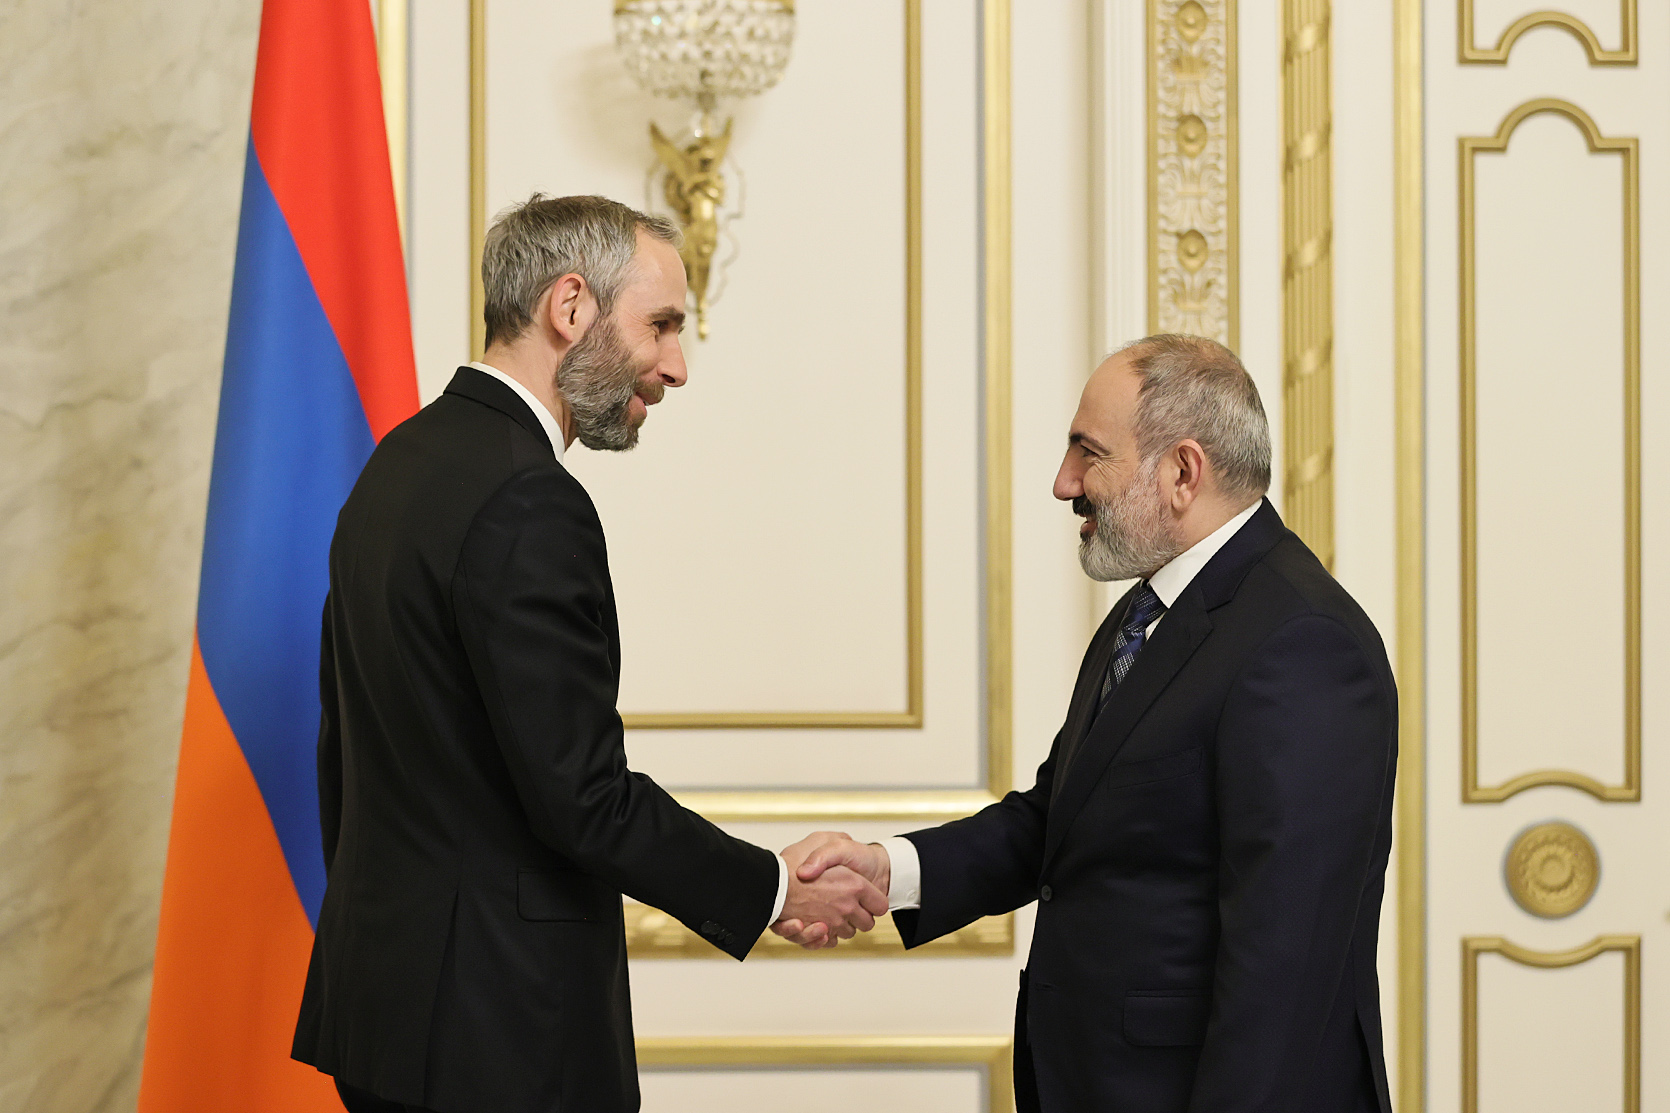 Пашинян обсудил с послом вопросы дальнейшего развития армяно-чешского сотрудничества